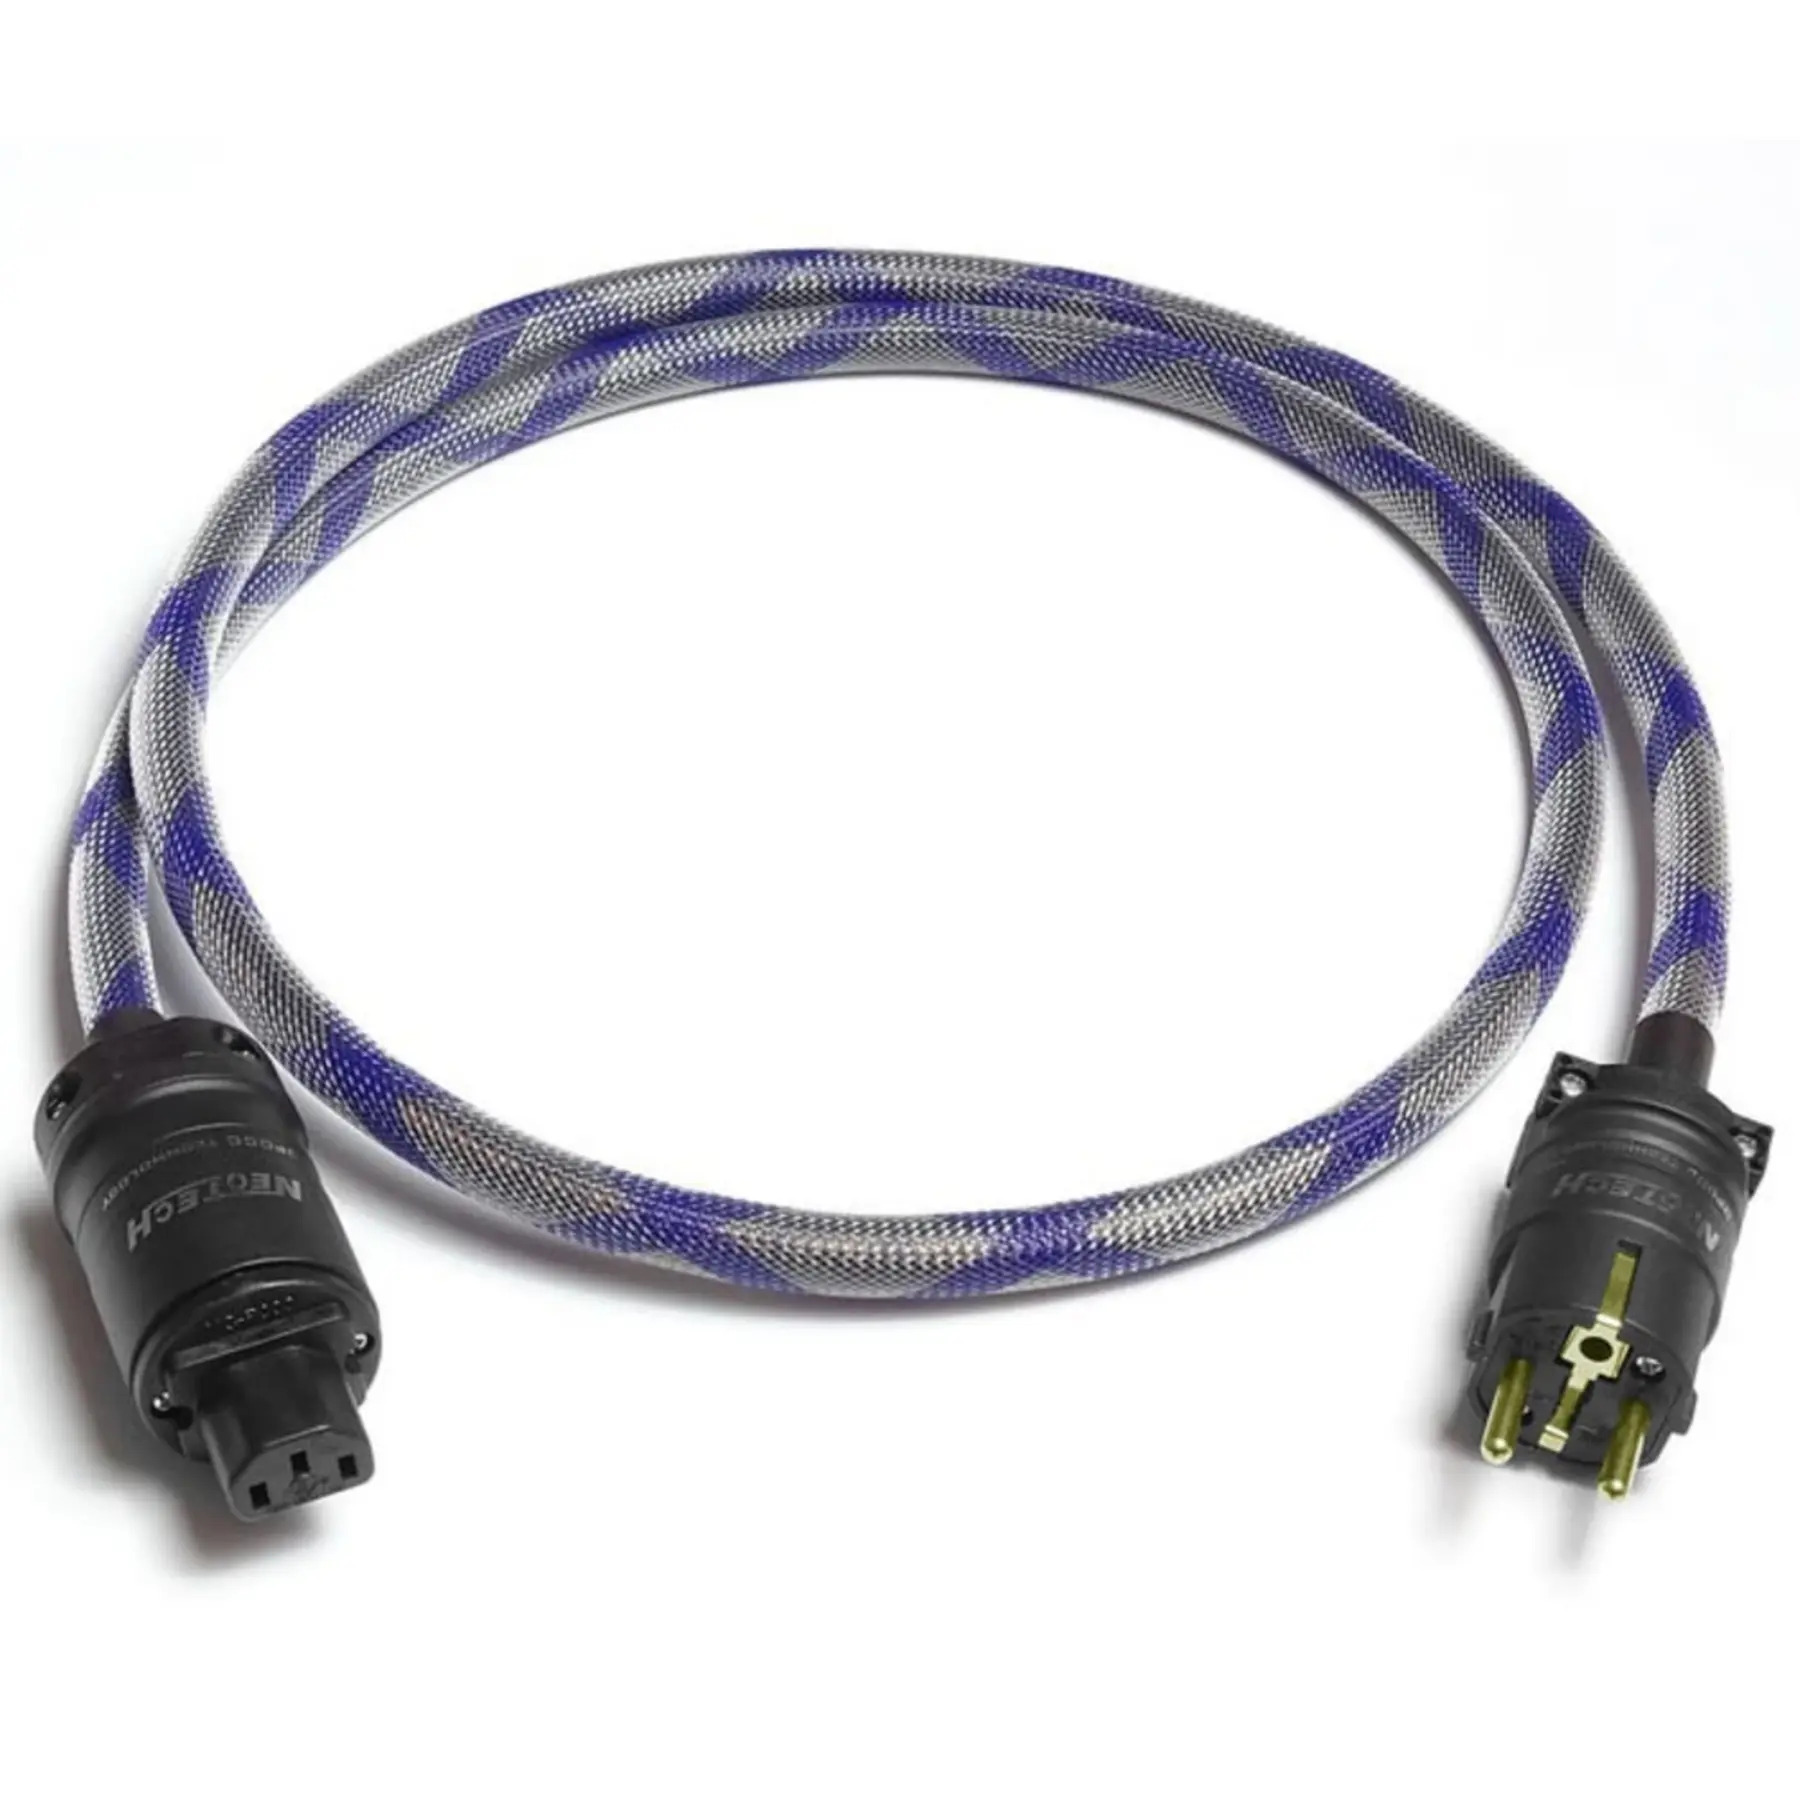 Силовые кабели Neotech NEP-3002 III 1.5m силовые кабели neotech nep 3002 iii 1 5m